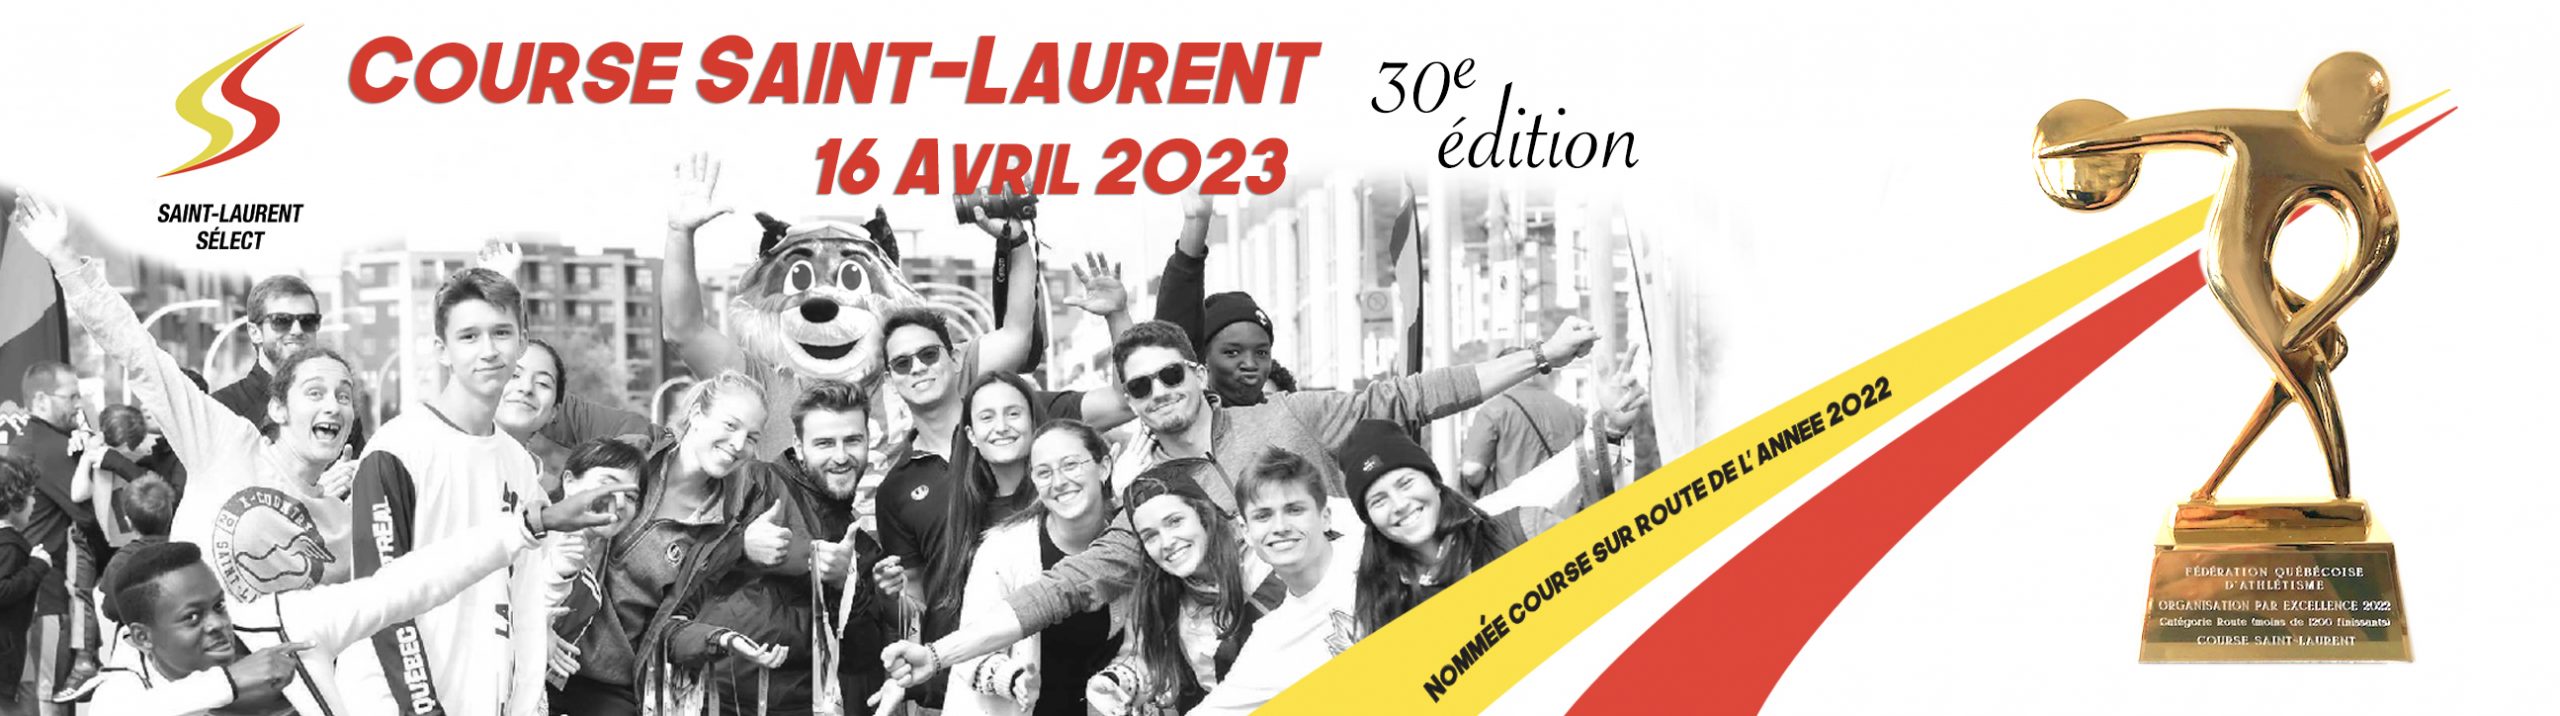 Course Saint-Laurent 2023